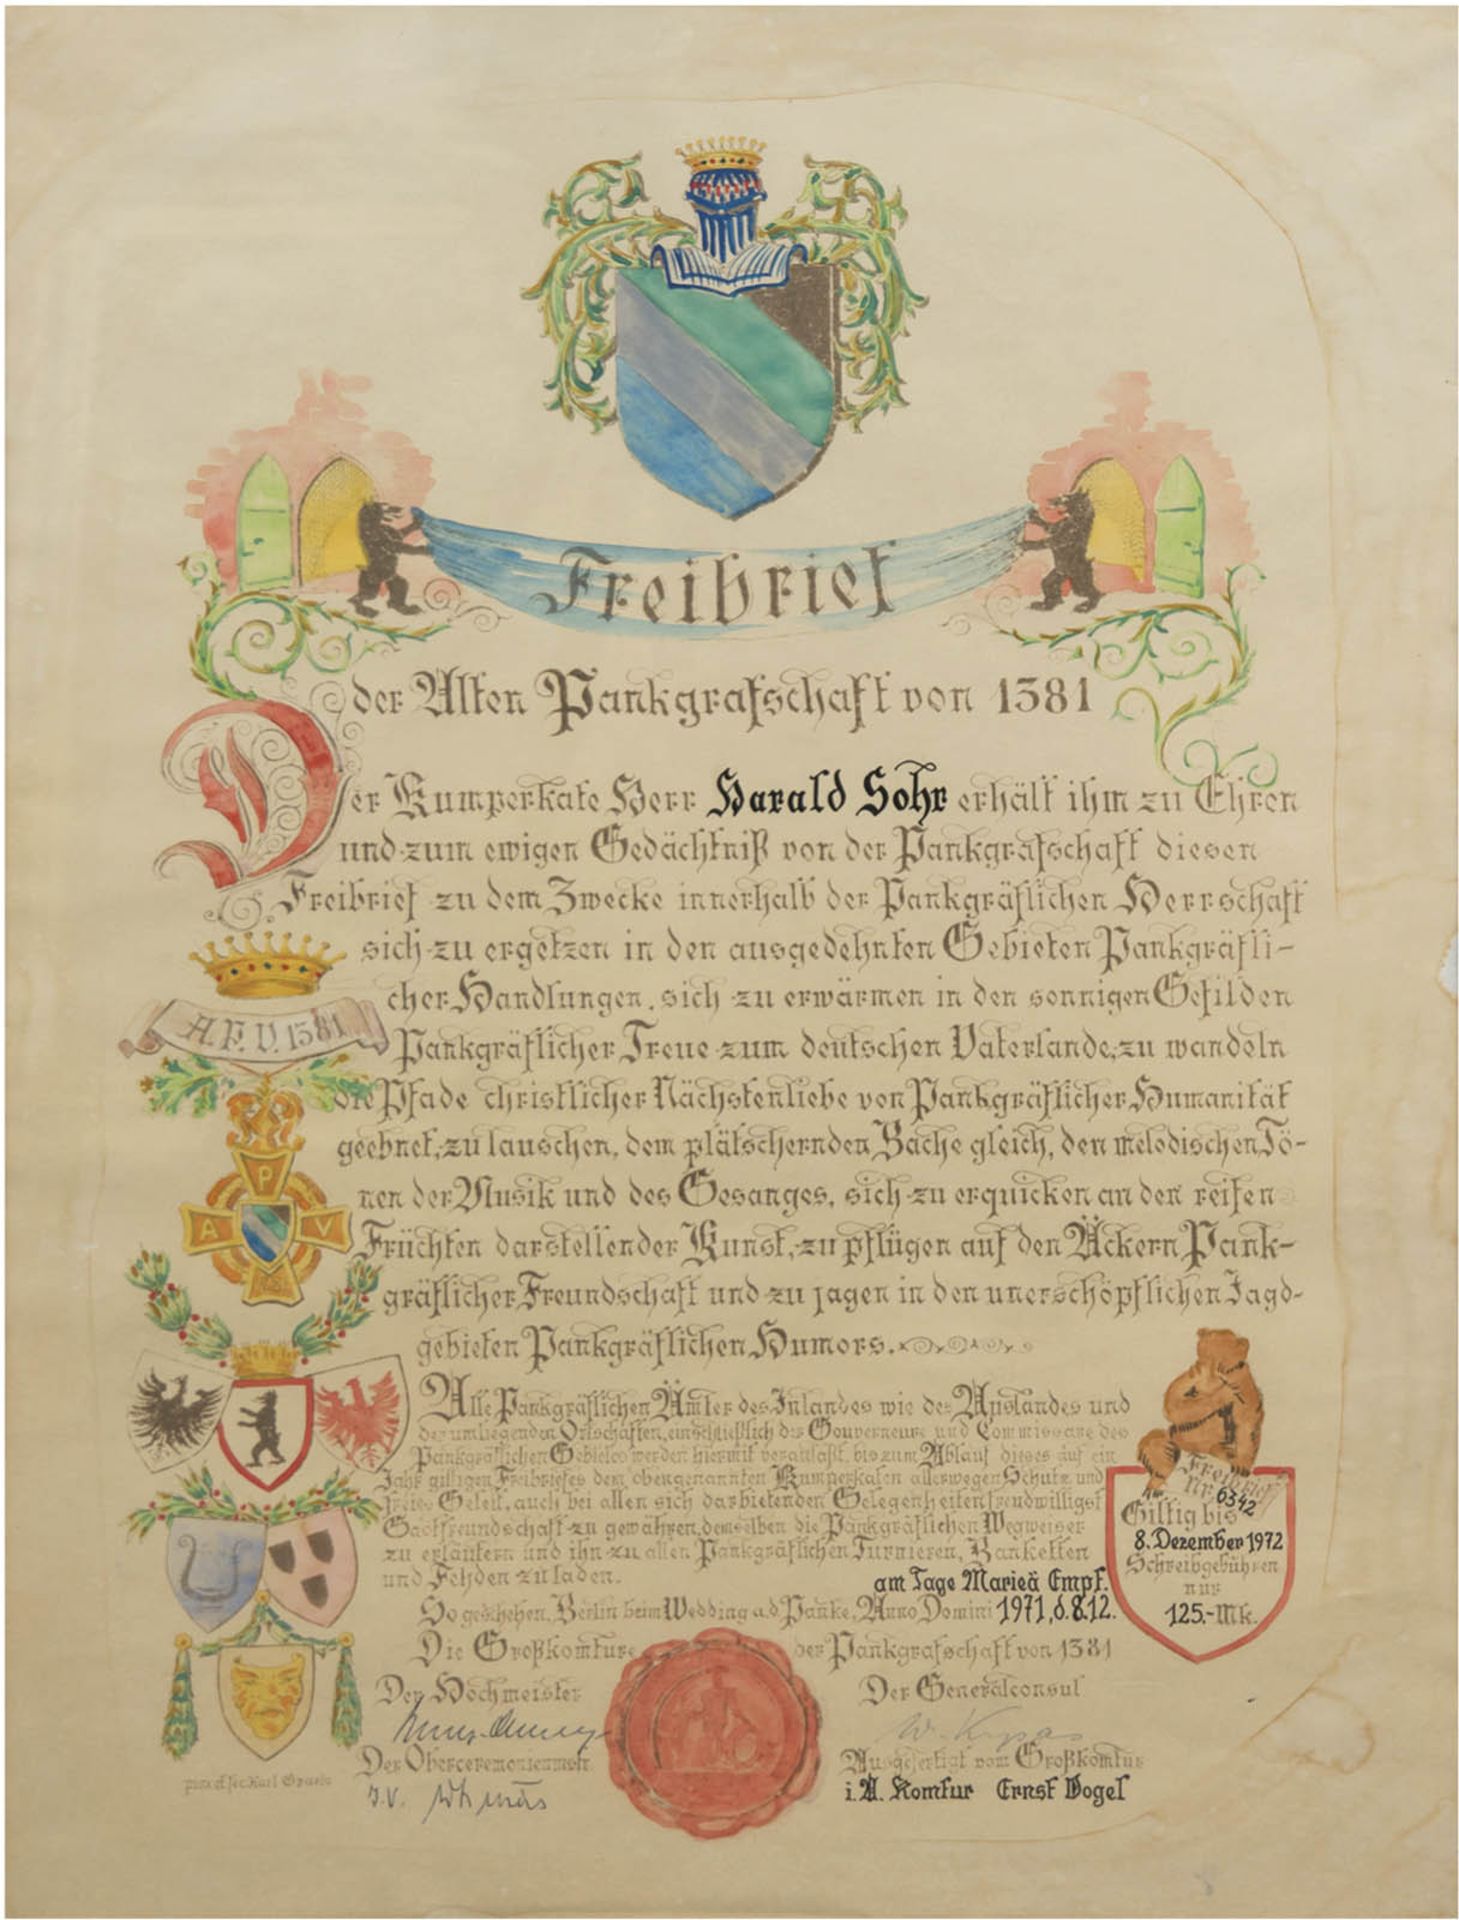 "Freibrief der Alten Pankgrafschaft von 1381", Litho ursprünglich von Karl Graetz Ende 19. J